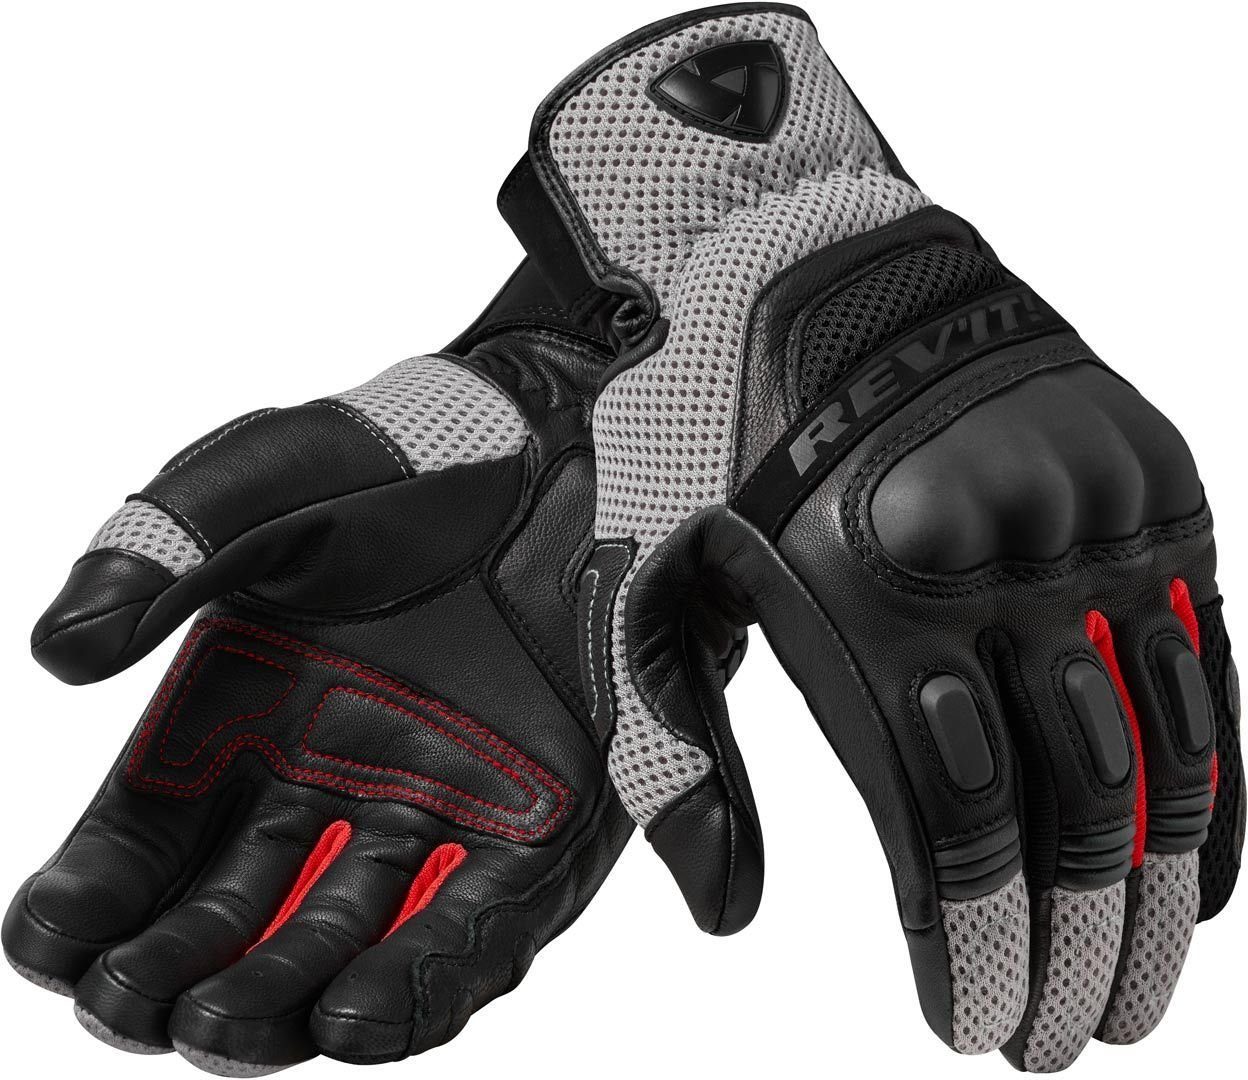 Revit Motorradhandschuhe Dirt 3 Black/Red Motocross Handschuhe